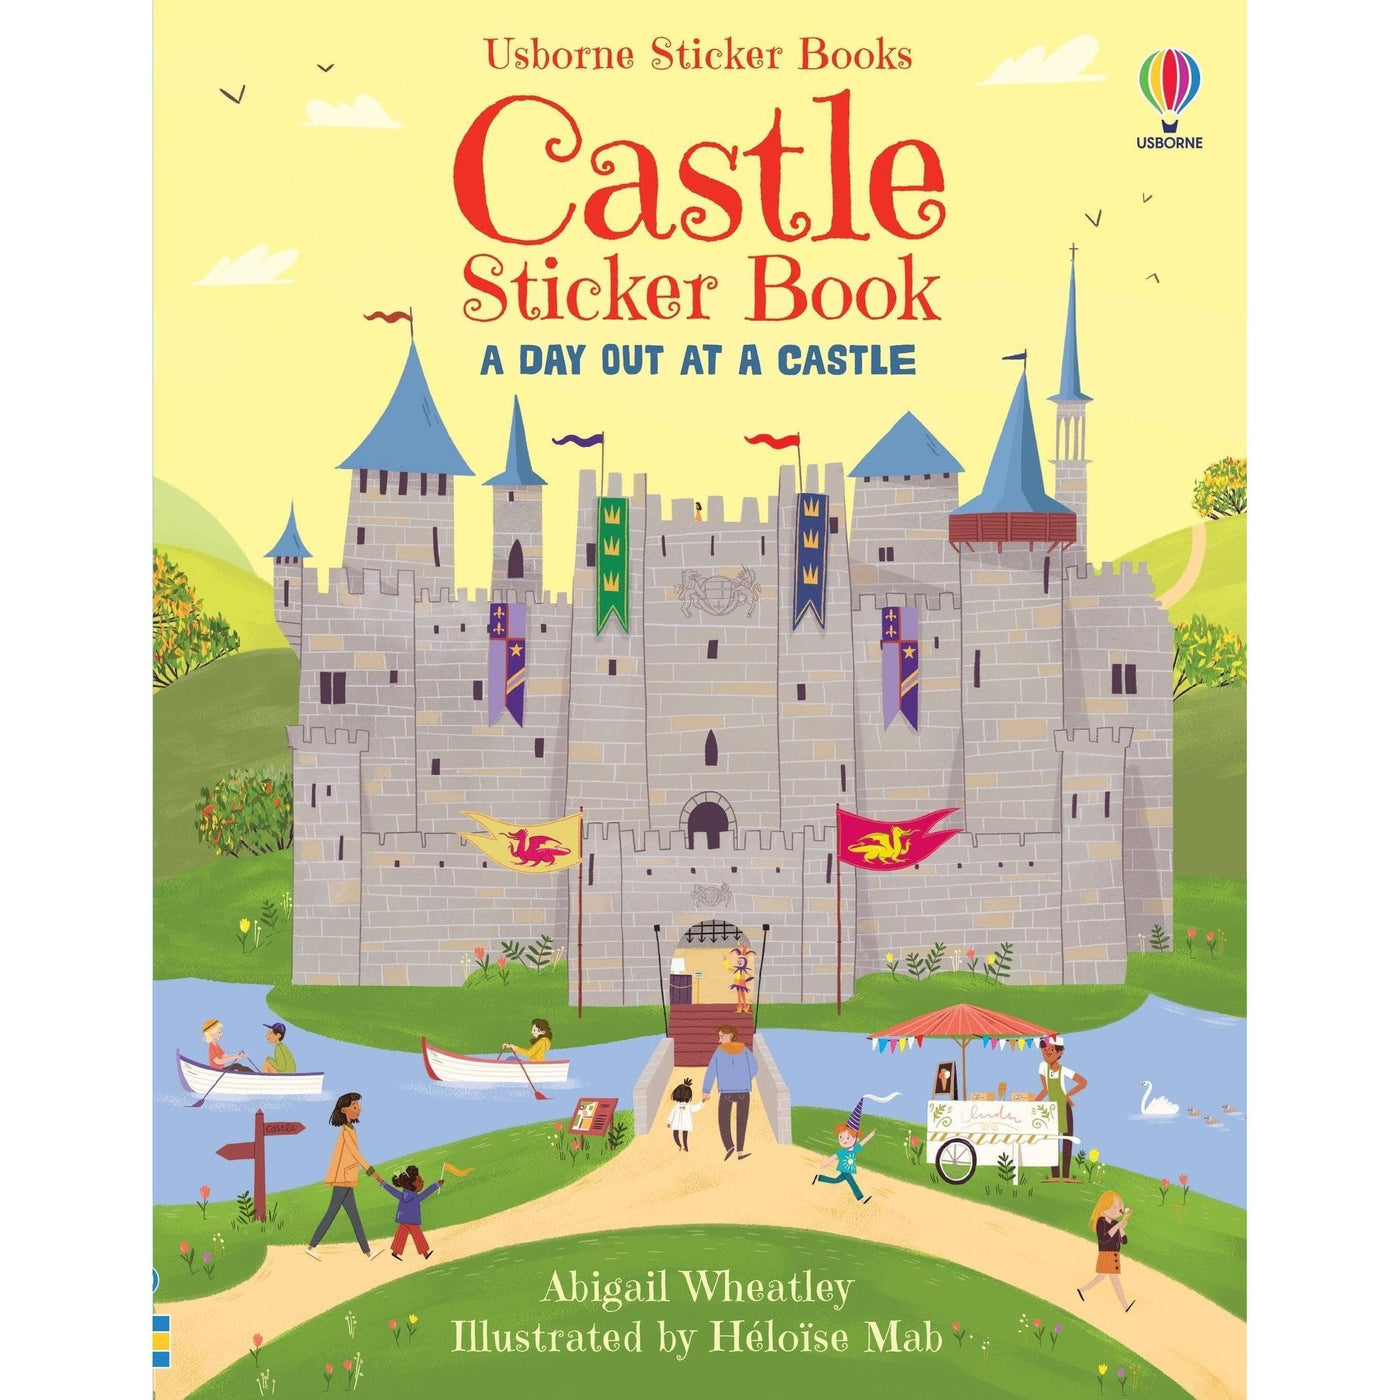 Castle Sticker Book - Abigail Wheatley & Heloise Mab